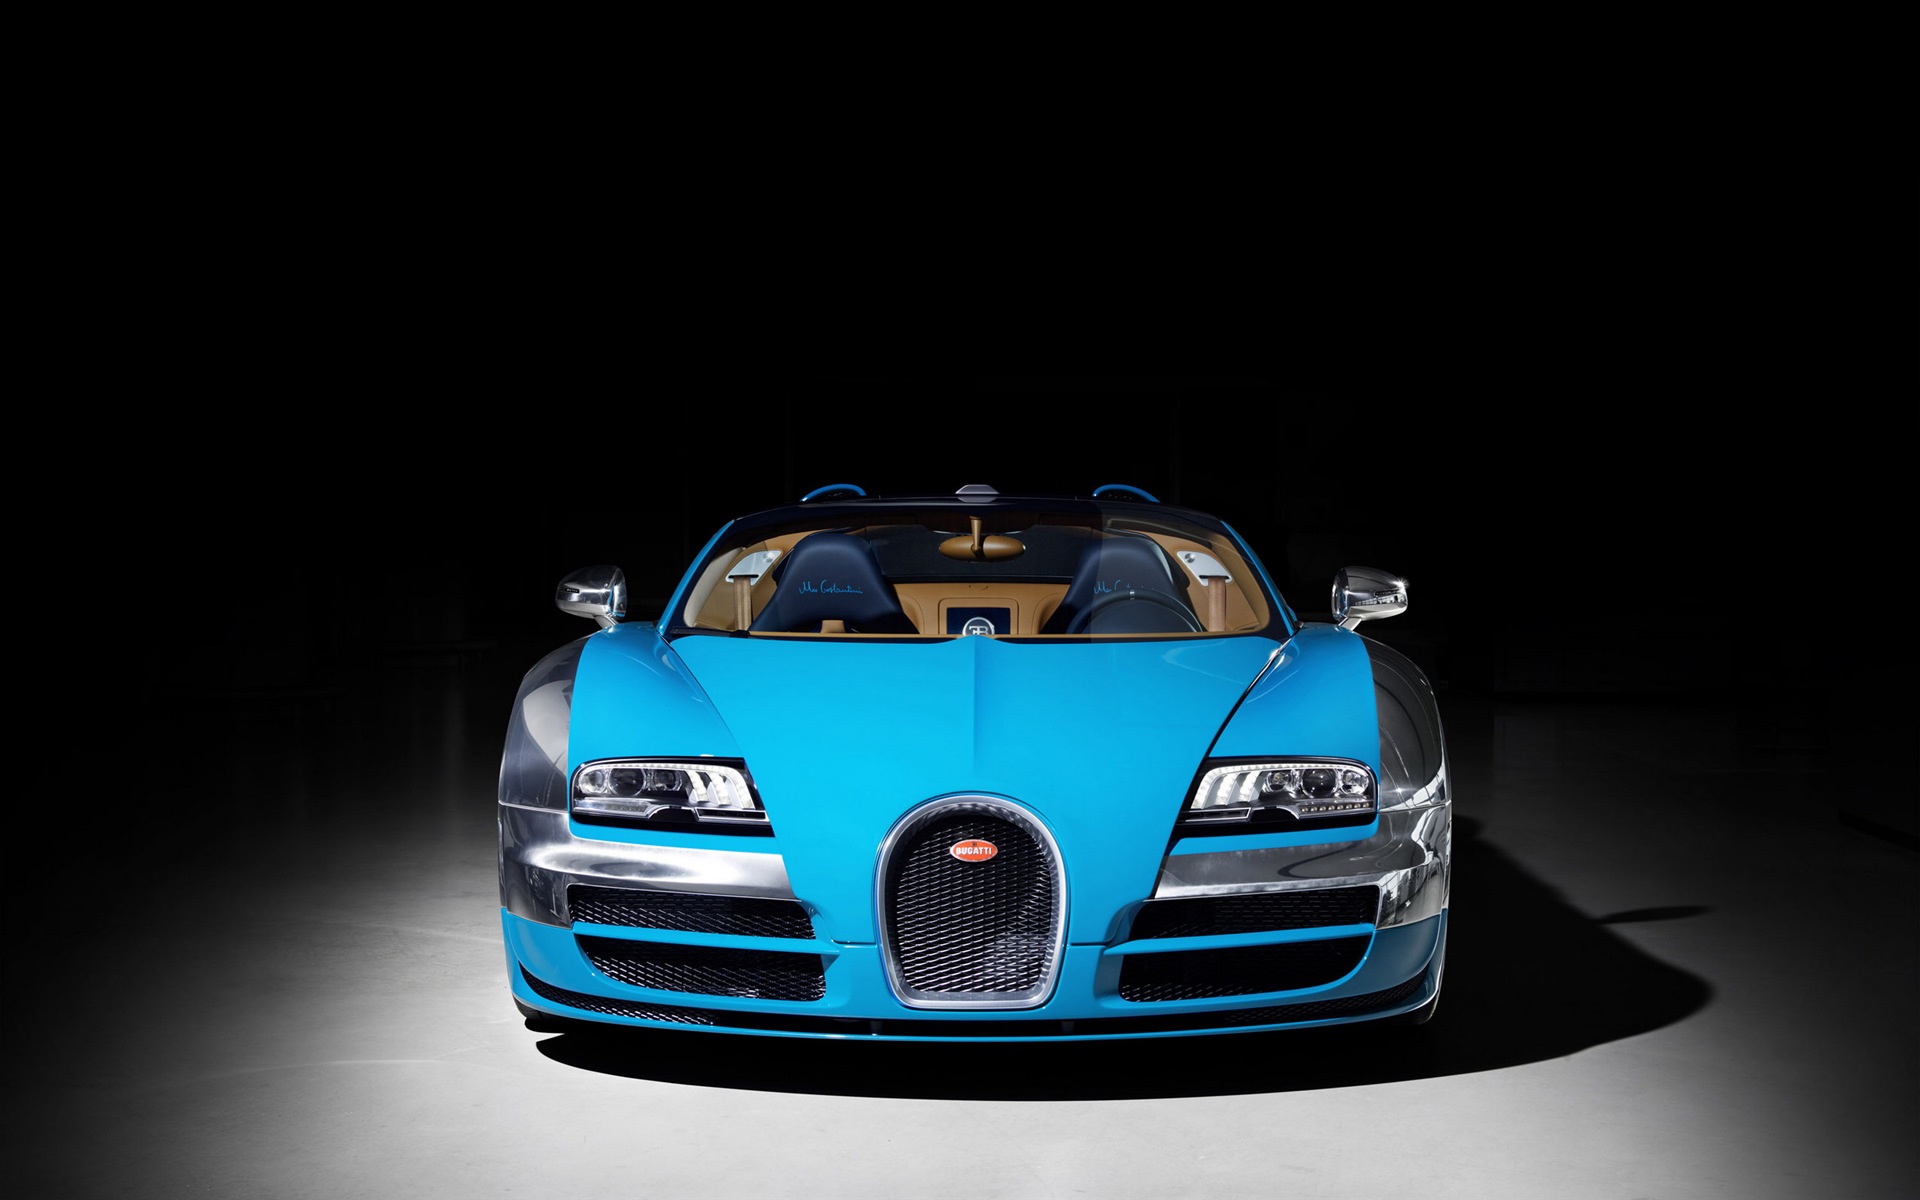 2013 Bugatti Veyron 16.4 Grand Sport Vitesse supercar fondos de pantalla de alta definición #2 - 1920x1200